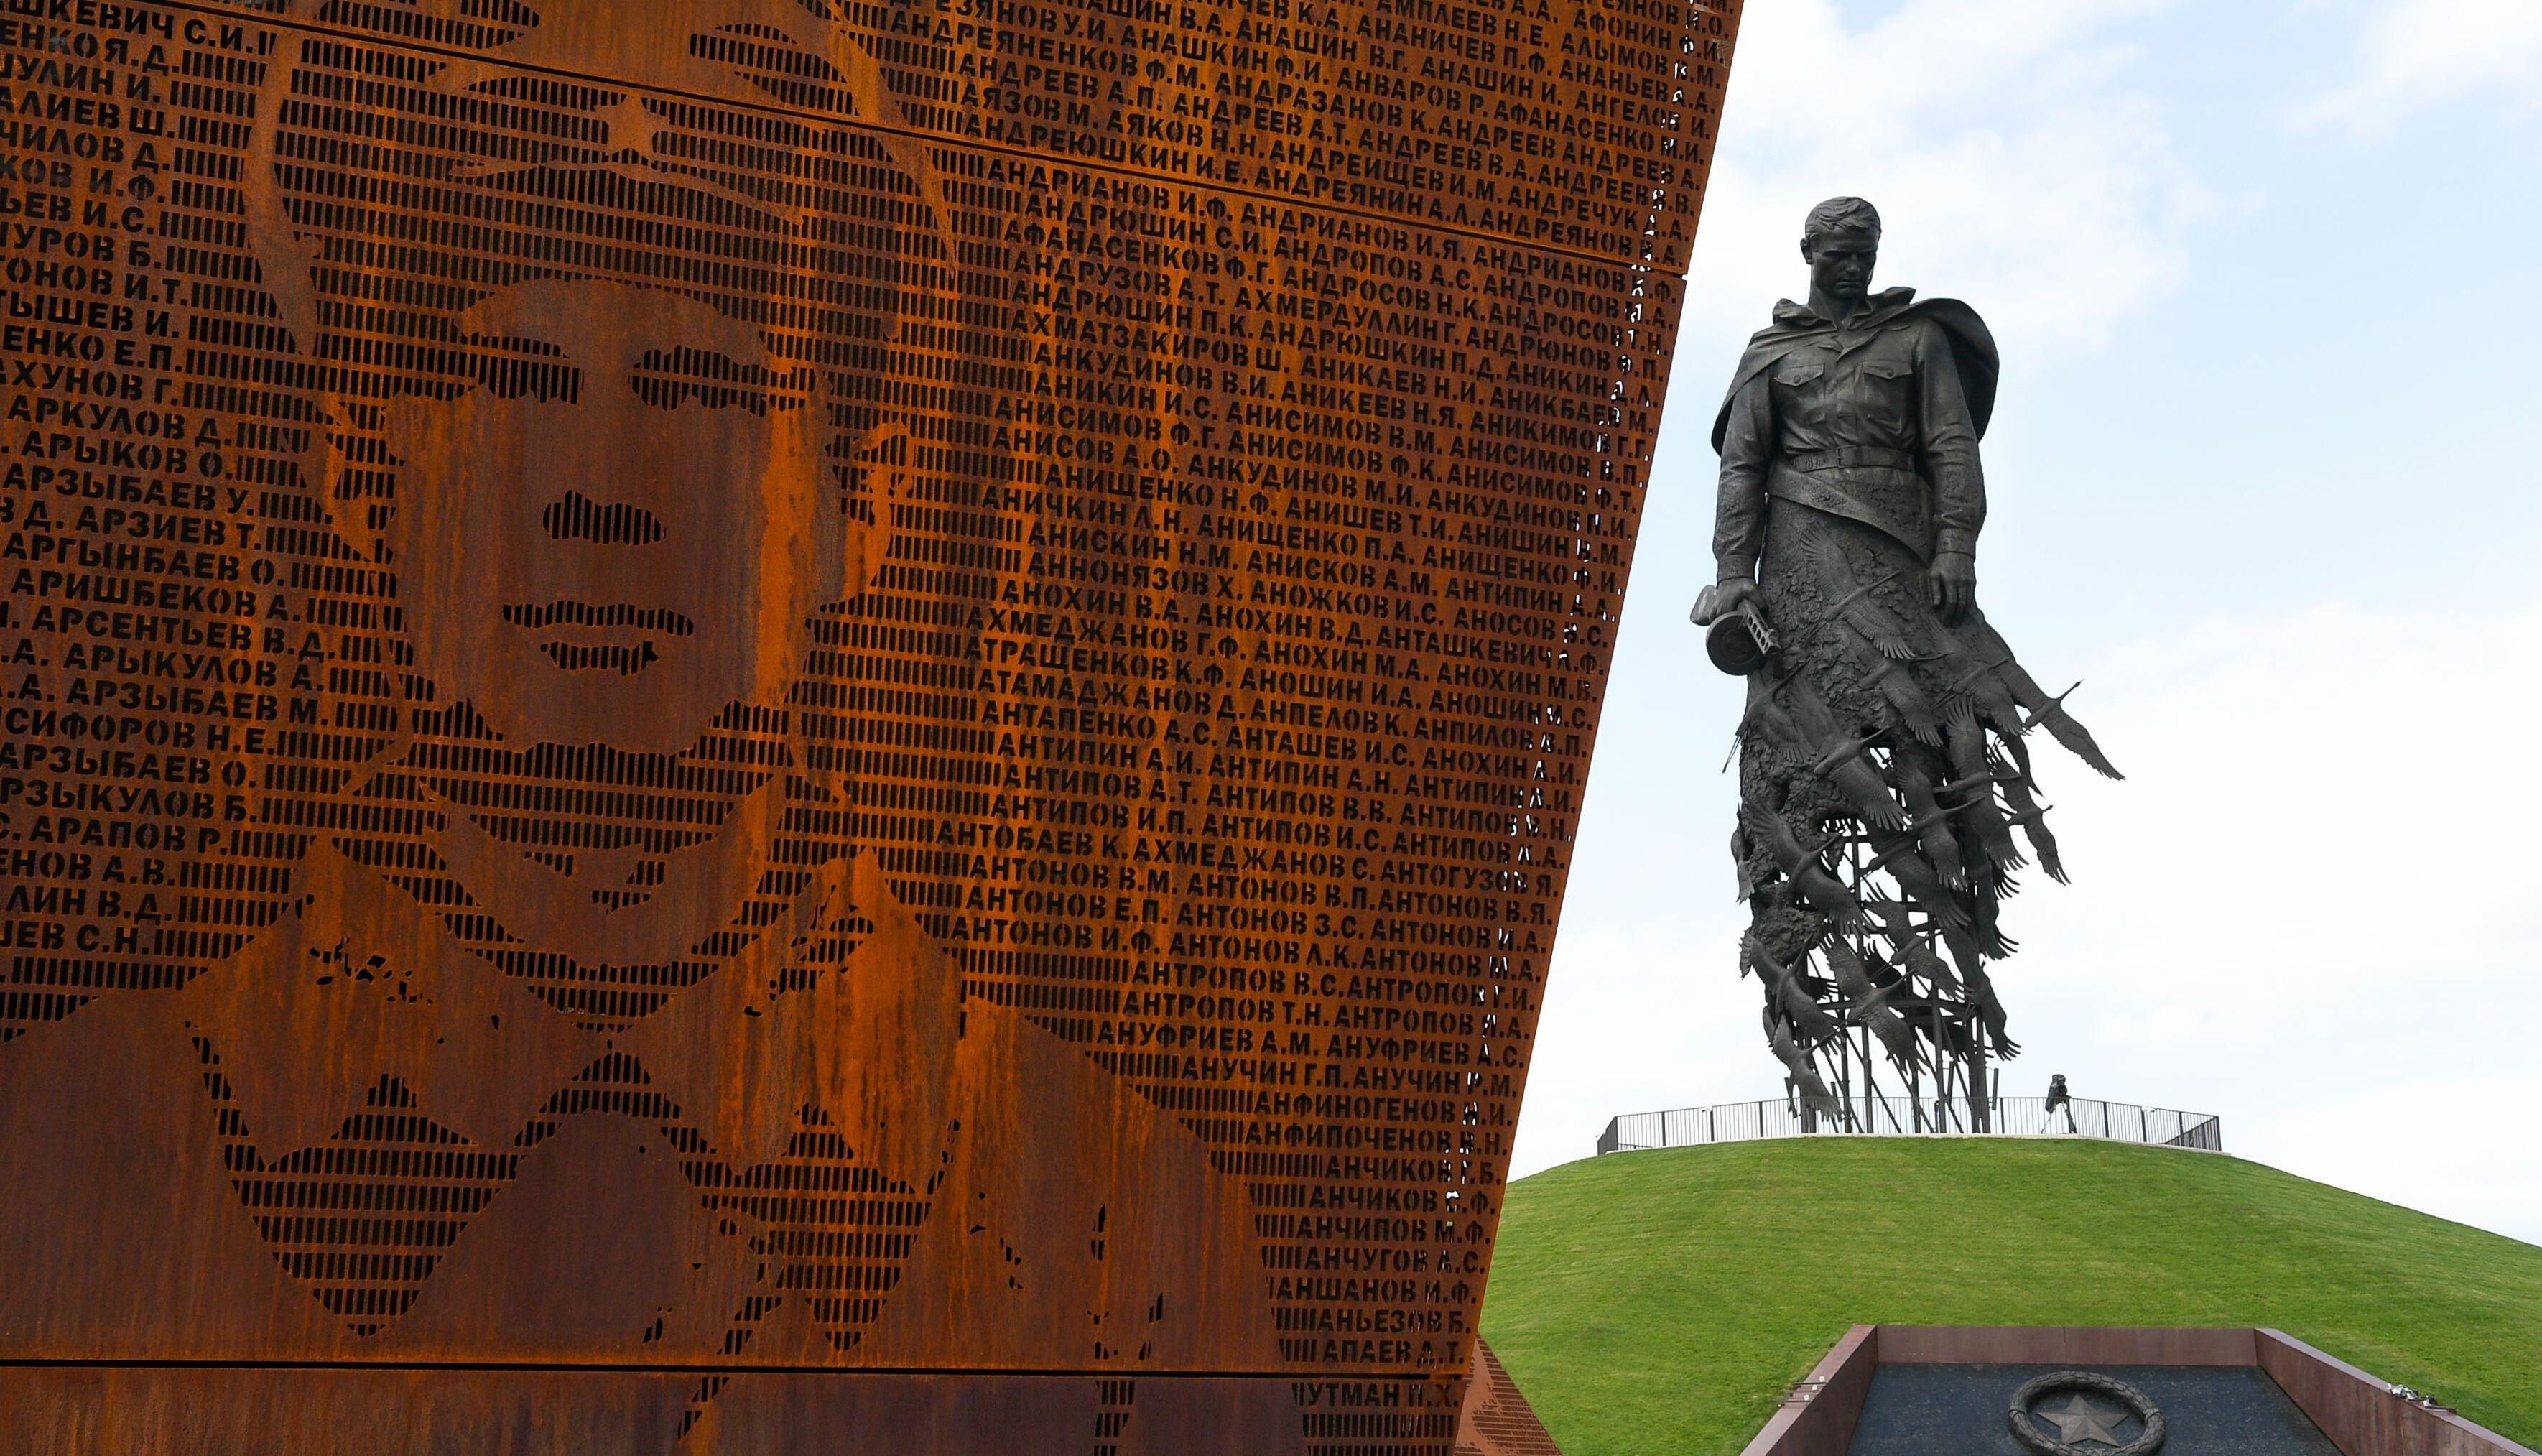  Потери в Ржевской битве не позволили нацистам удержать Беларусь – историк